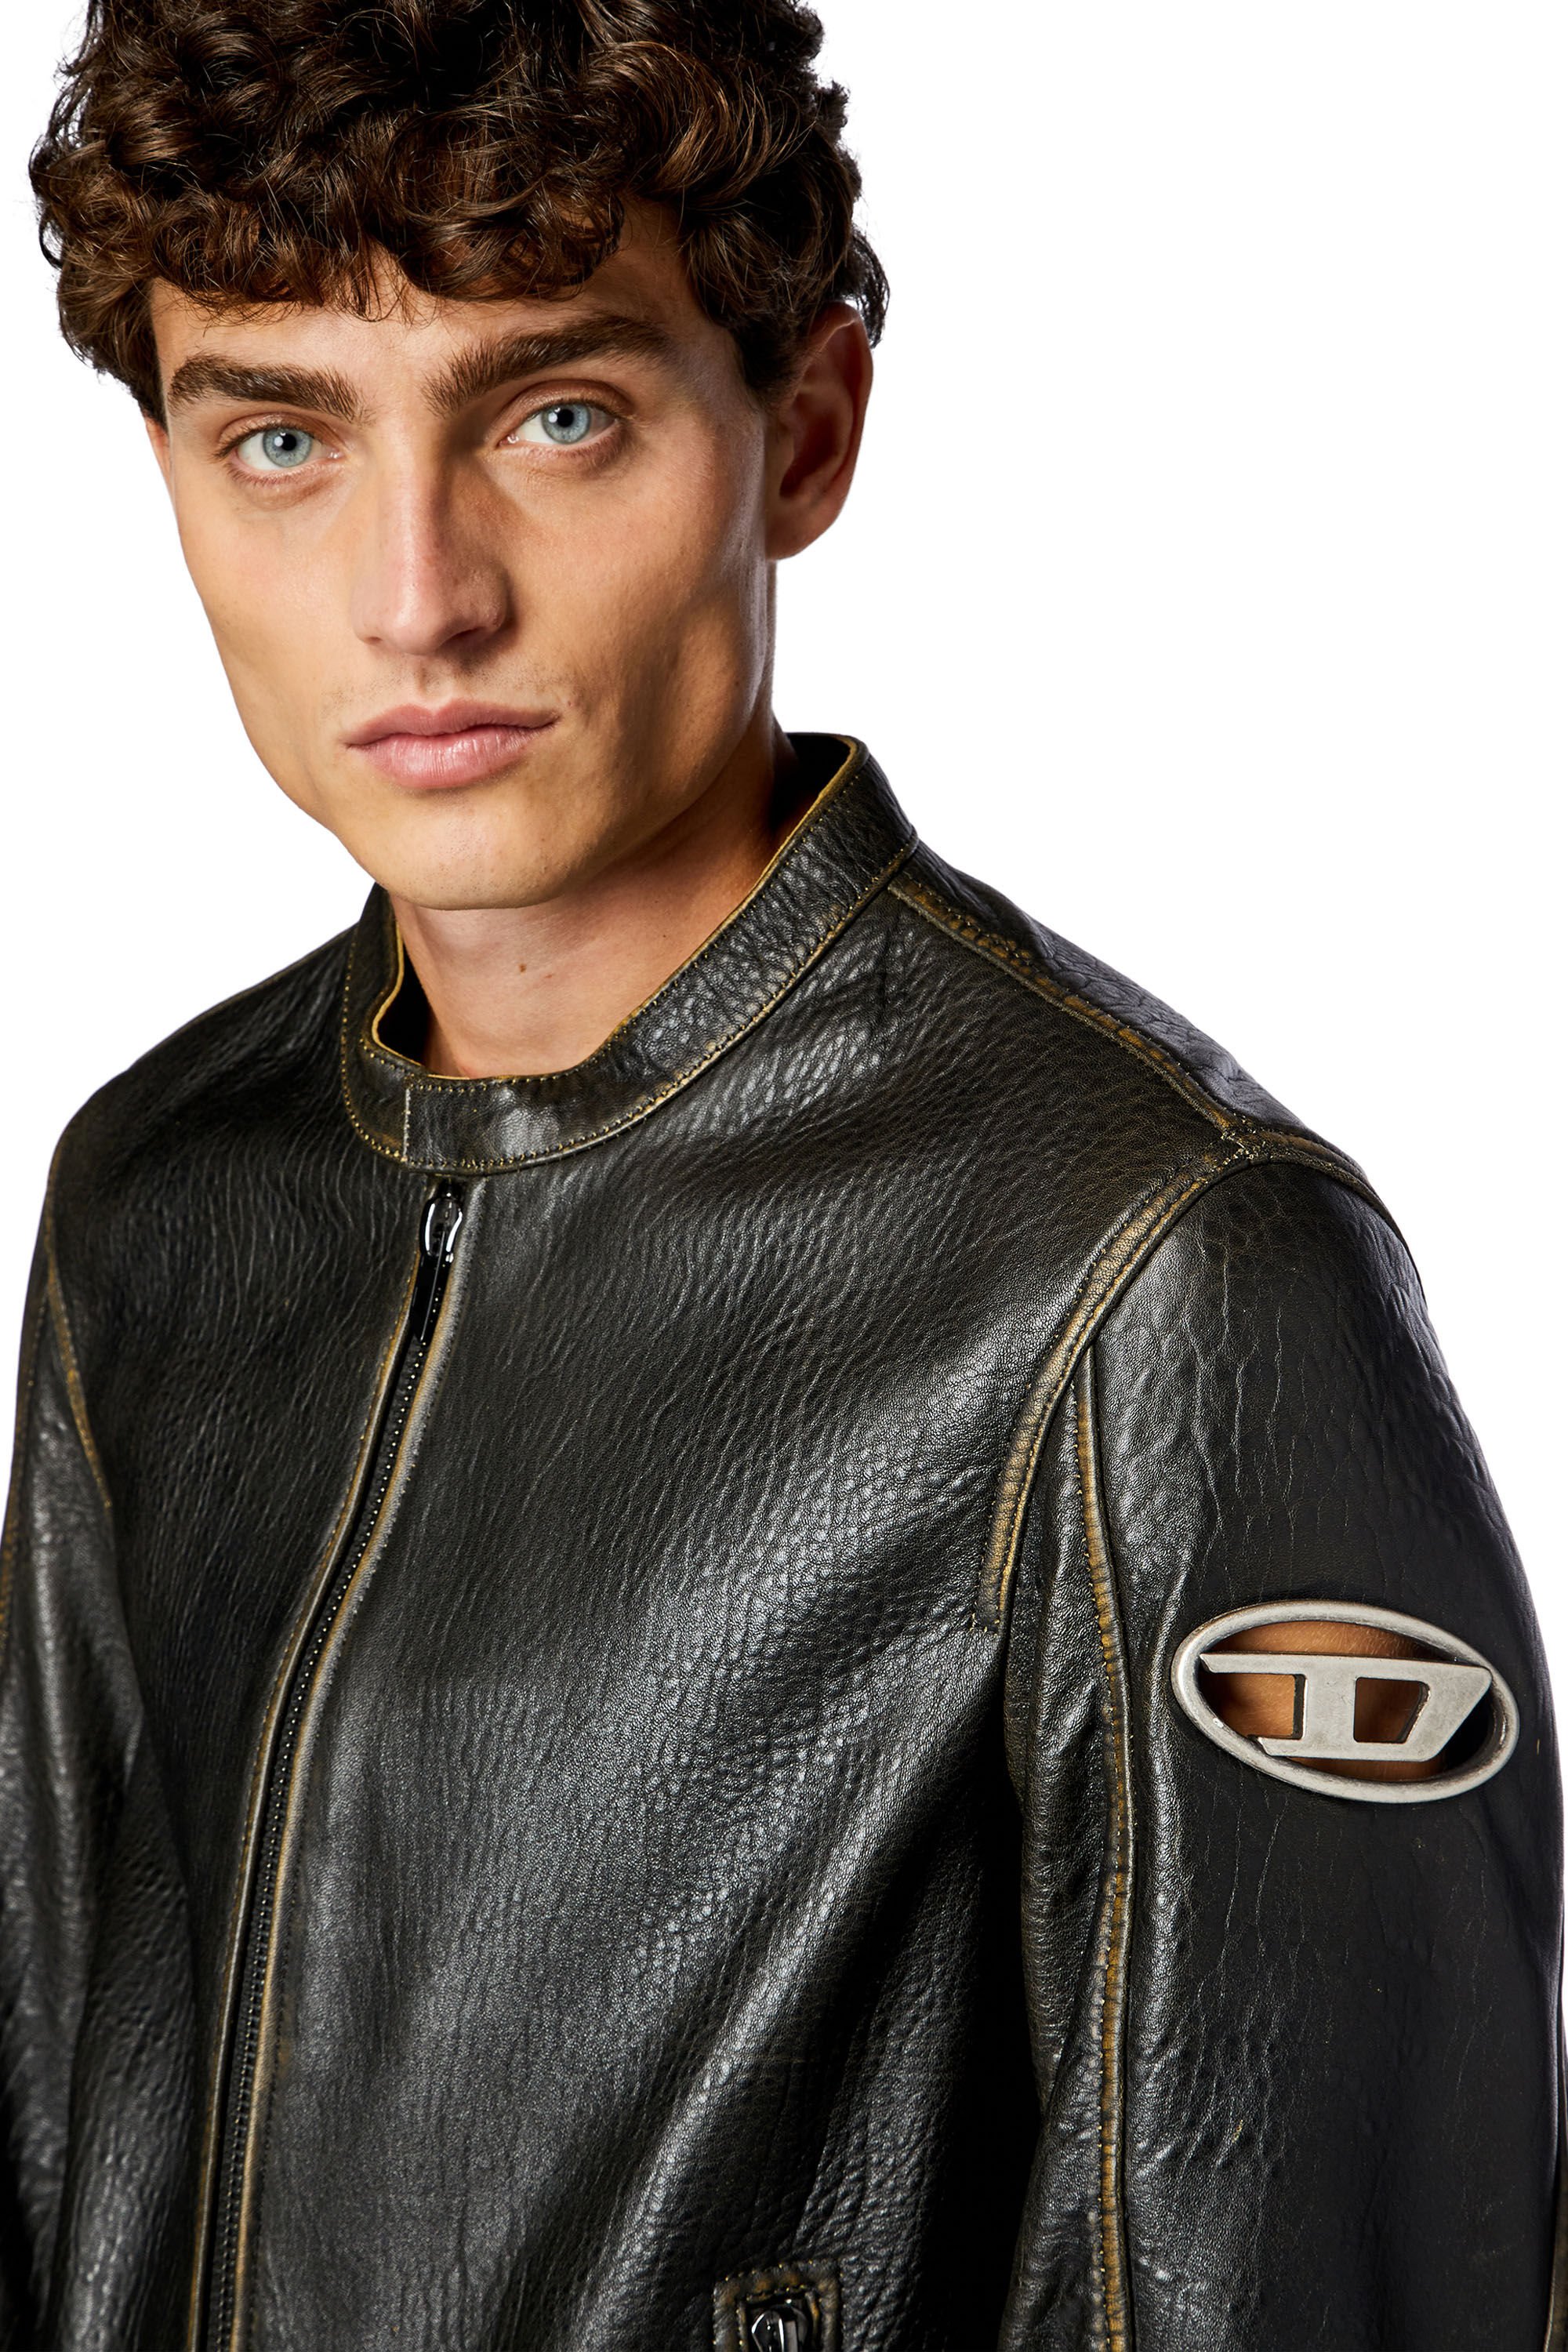 Diesel - L-COBBE, Man Biker jacket in wrinkled leather in Brown - Image 4